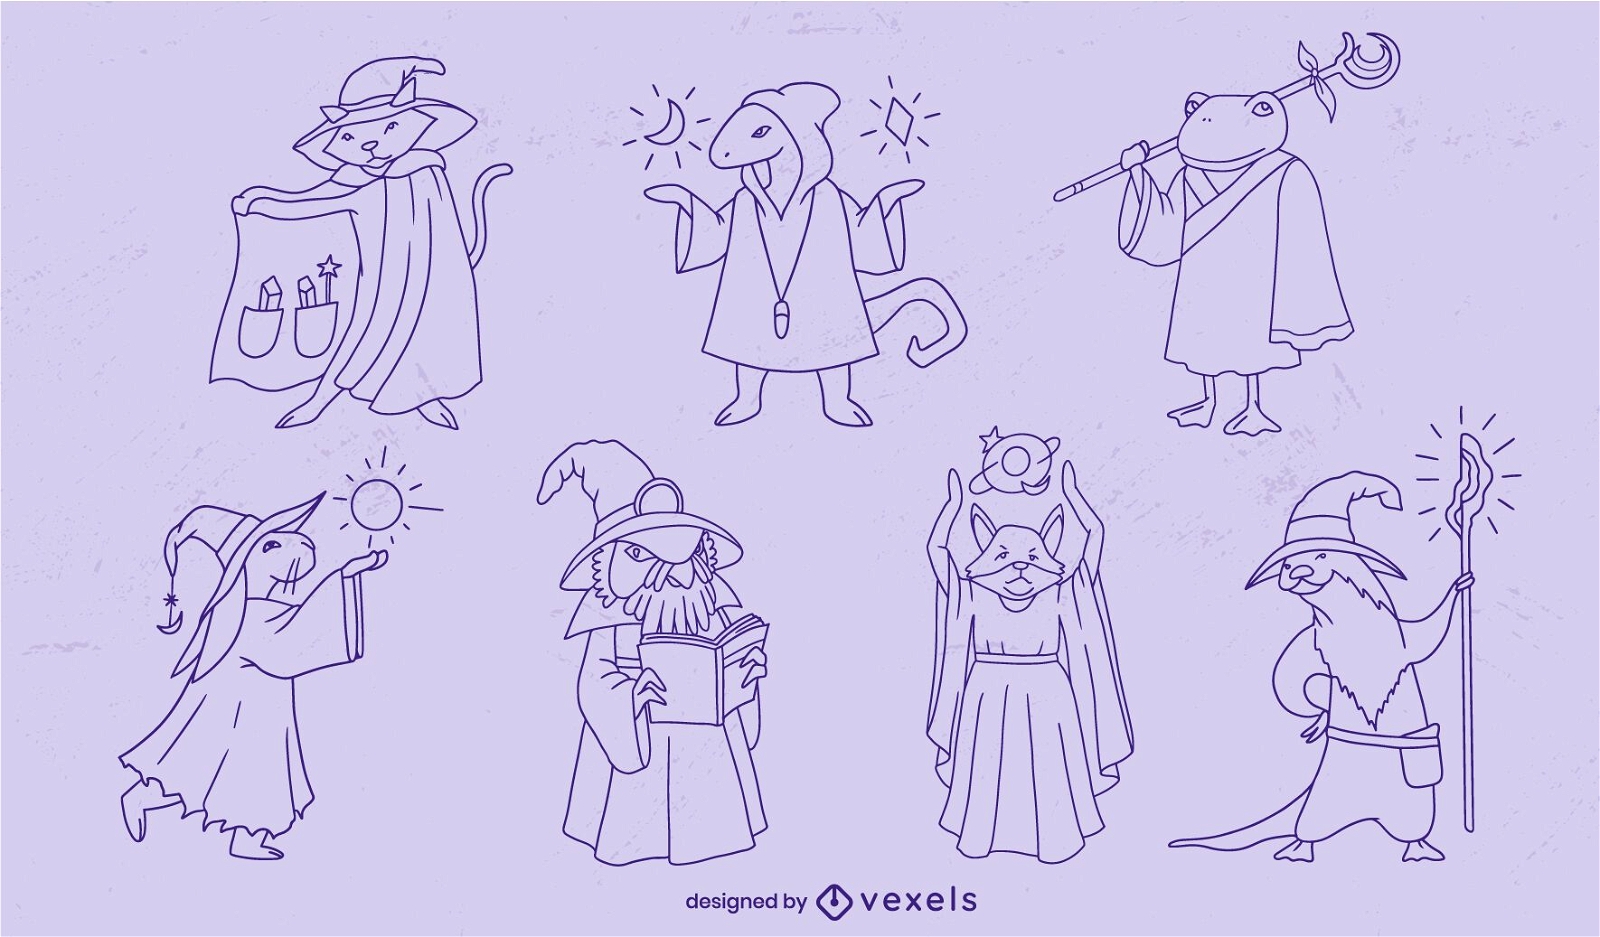 Animais feiticeiros, personagens de fantasia